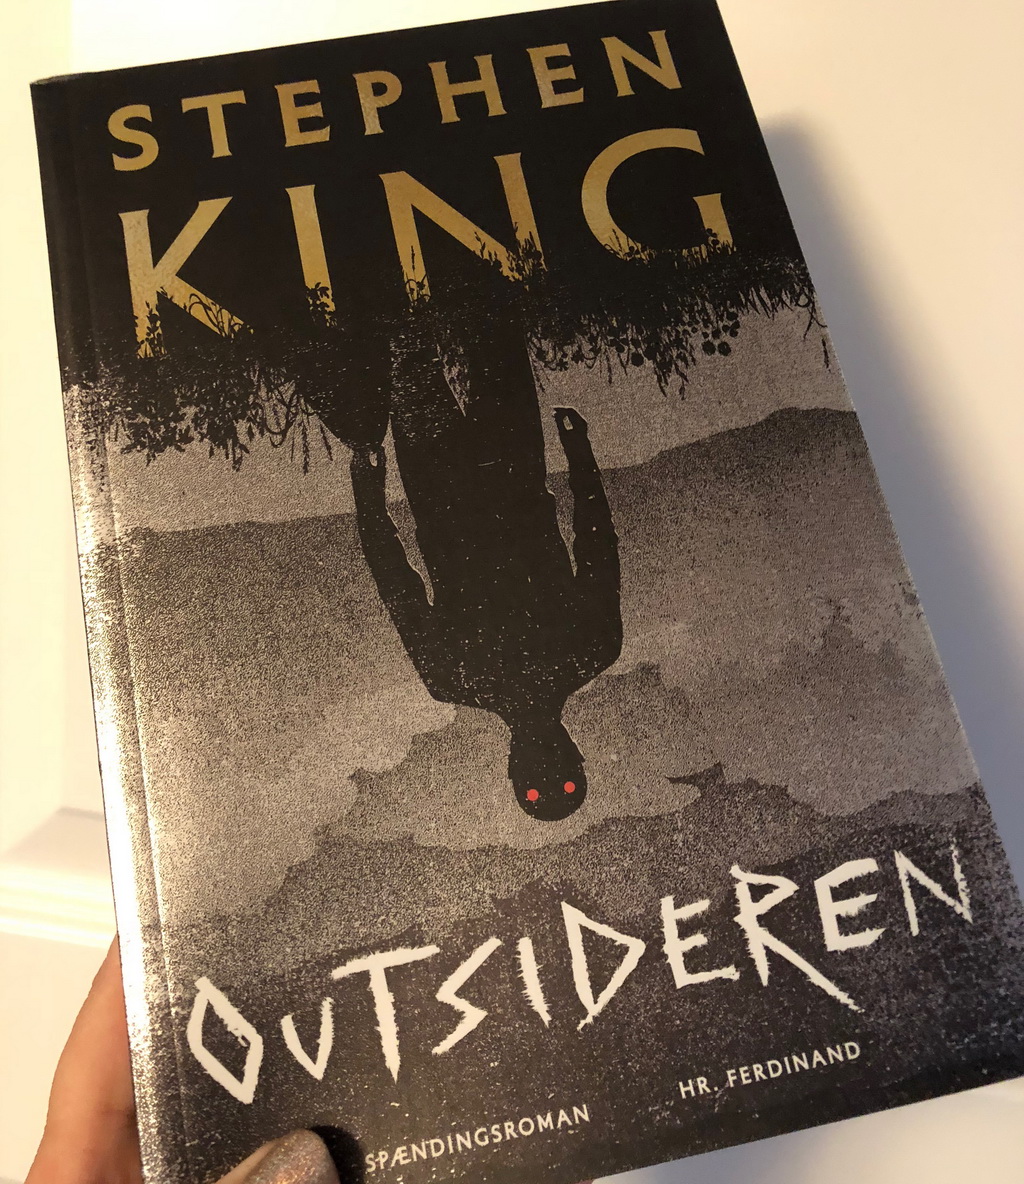 Outsideren af Stephen King